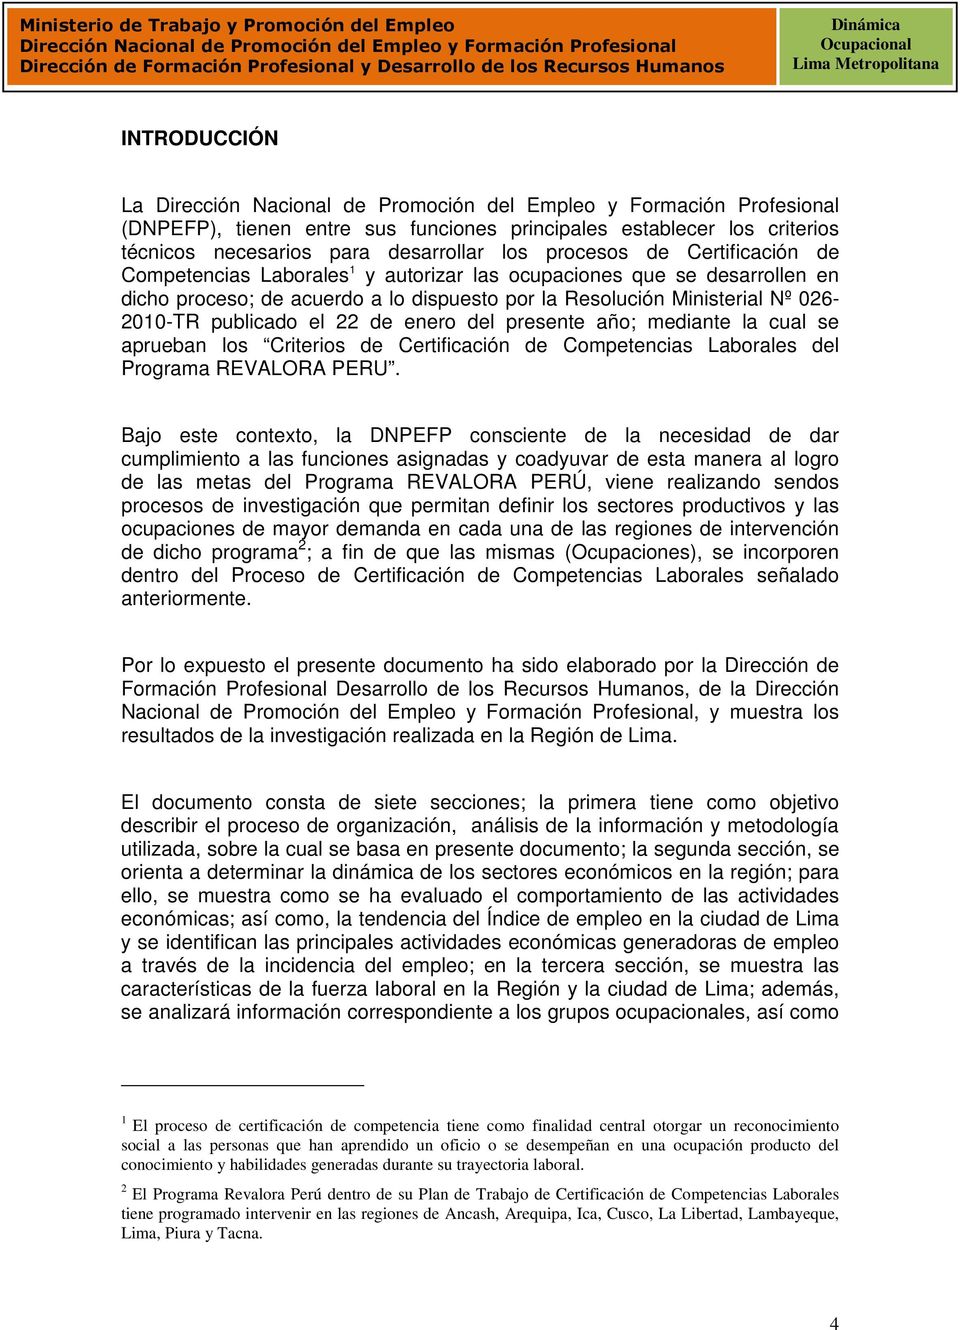 Criterios de Certificación de Competencias Laborales del Programa REVALORA PERU.